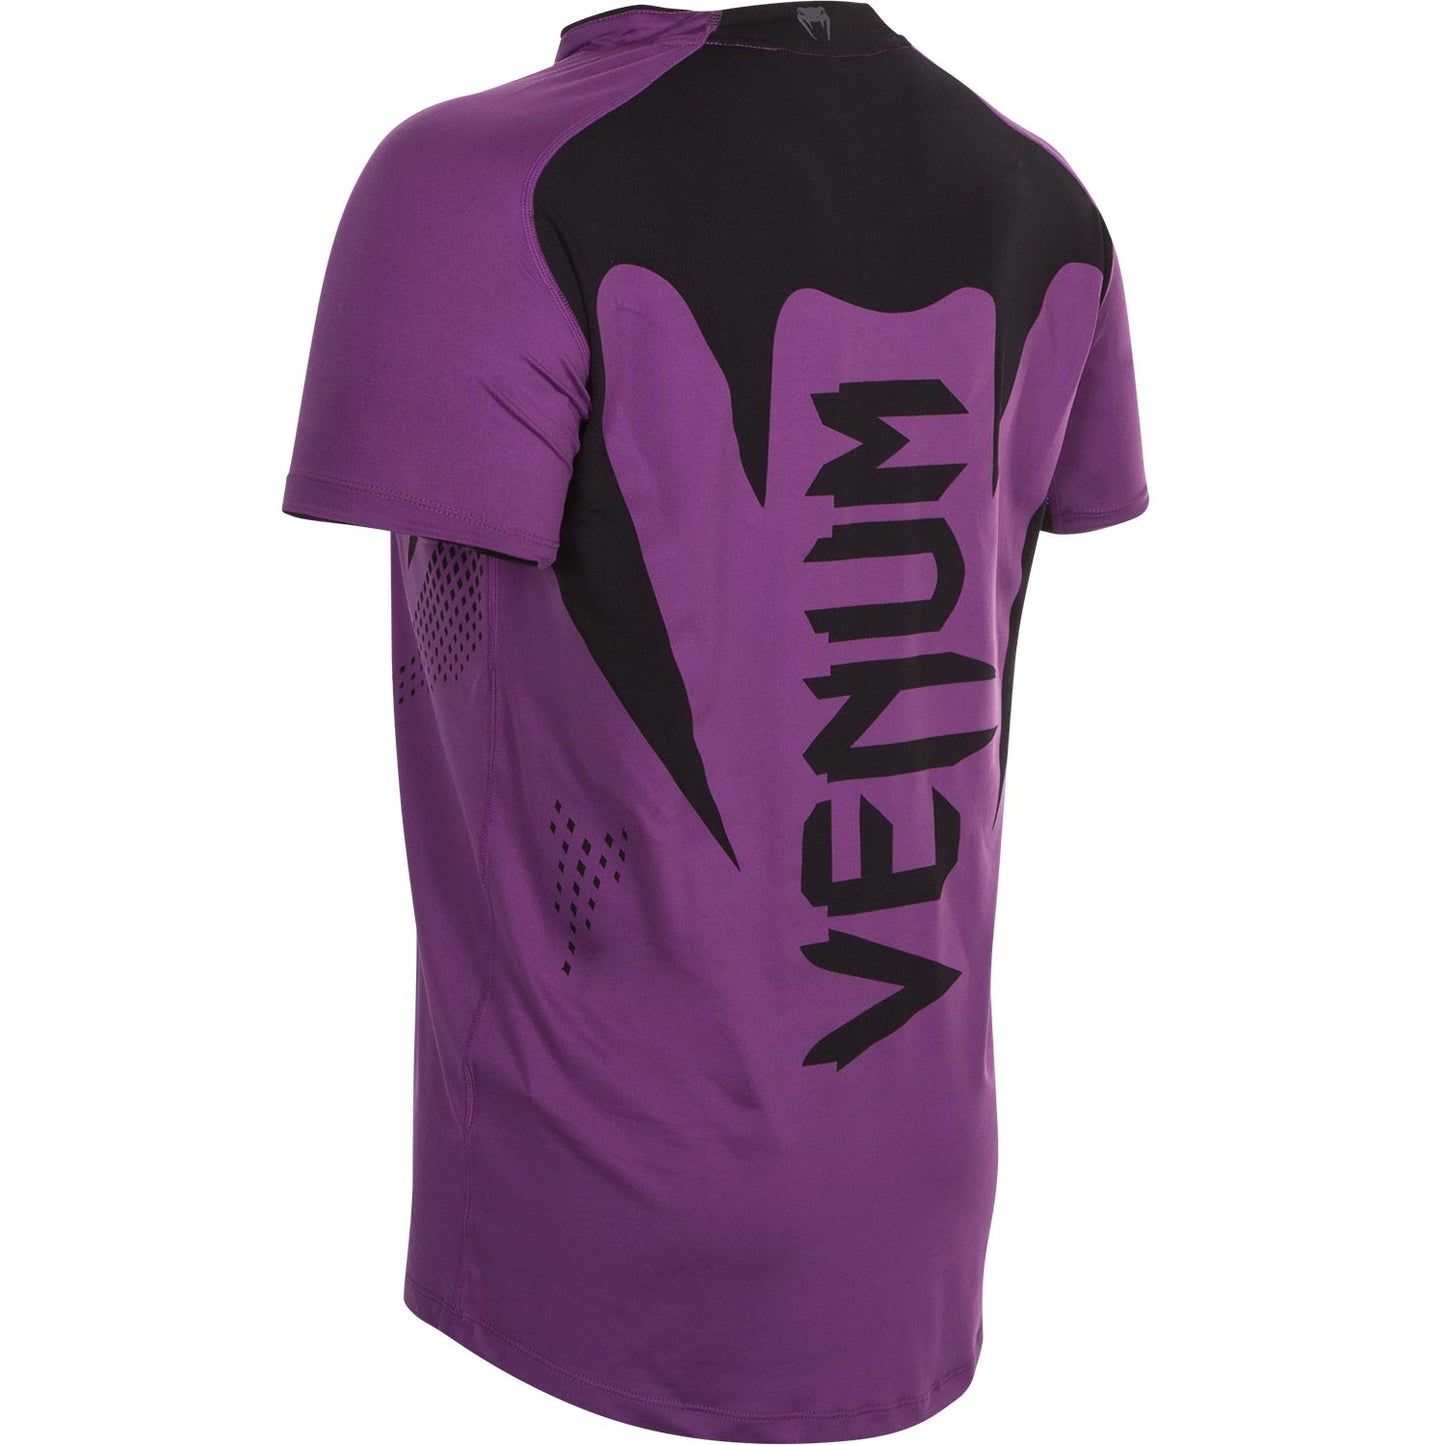 Camiseta Venum Hurricane X Fit™ - Violeta/Negro